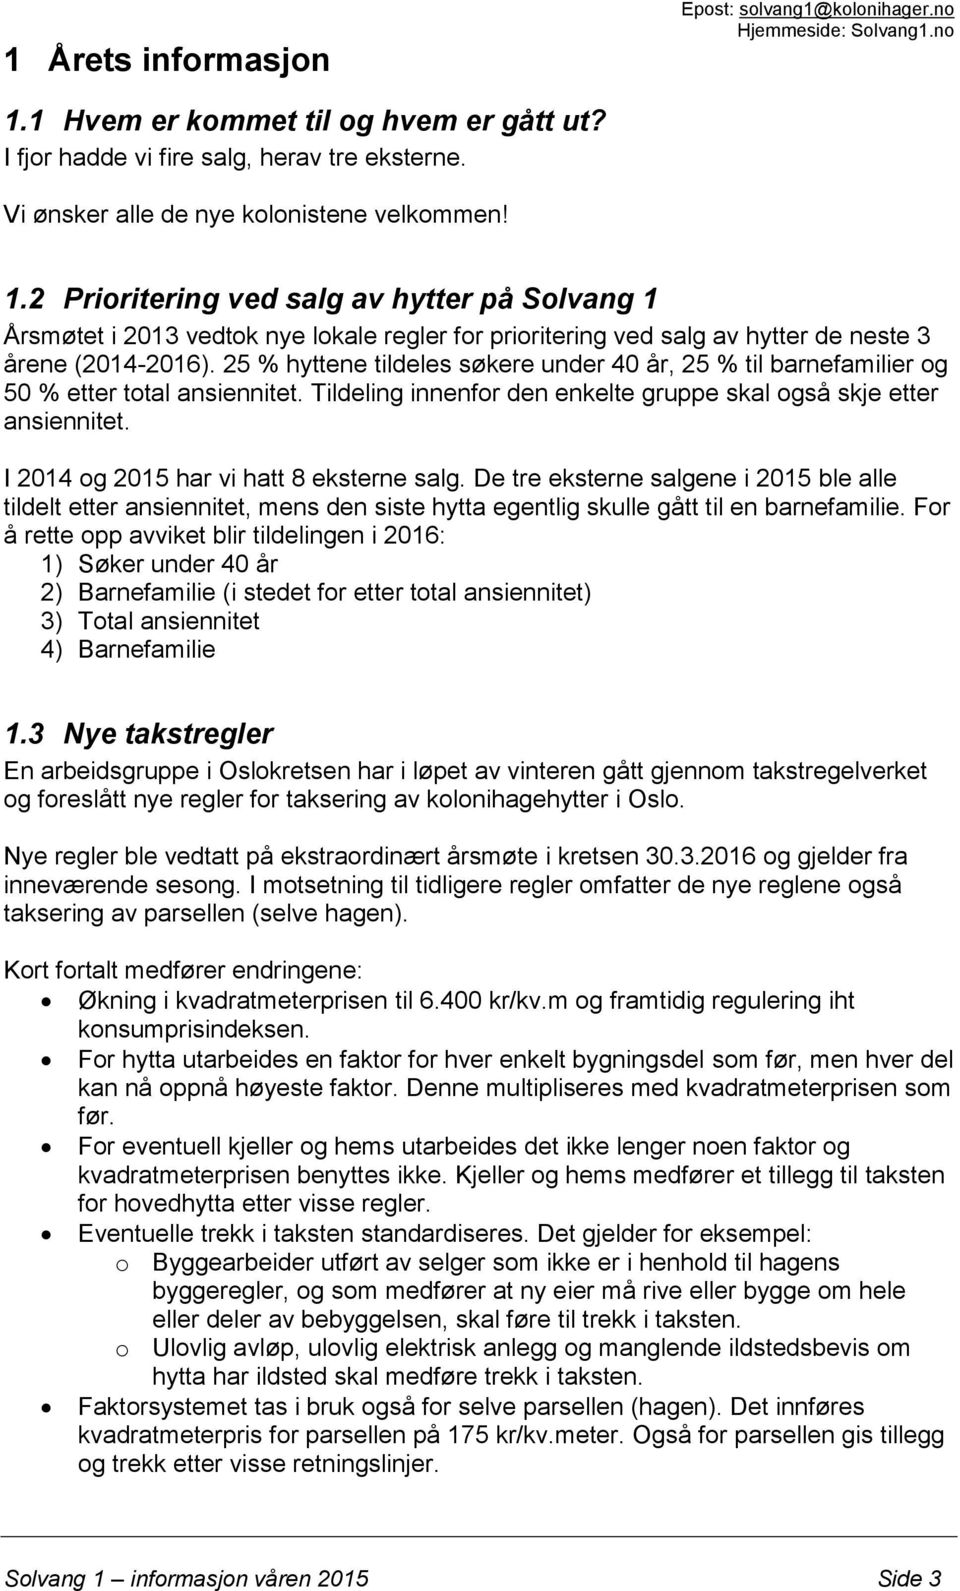 2 Prioritering ved salg av hytter på Solvang 1 Årsmøtet i 2013 vedtok nye lokale regler for prioritering ved salg av hytter de neste 3 årene (2014-2016).